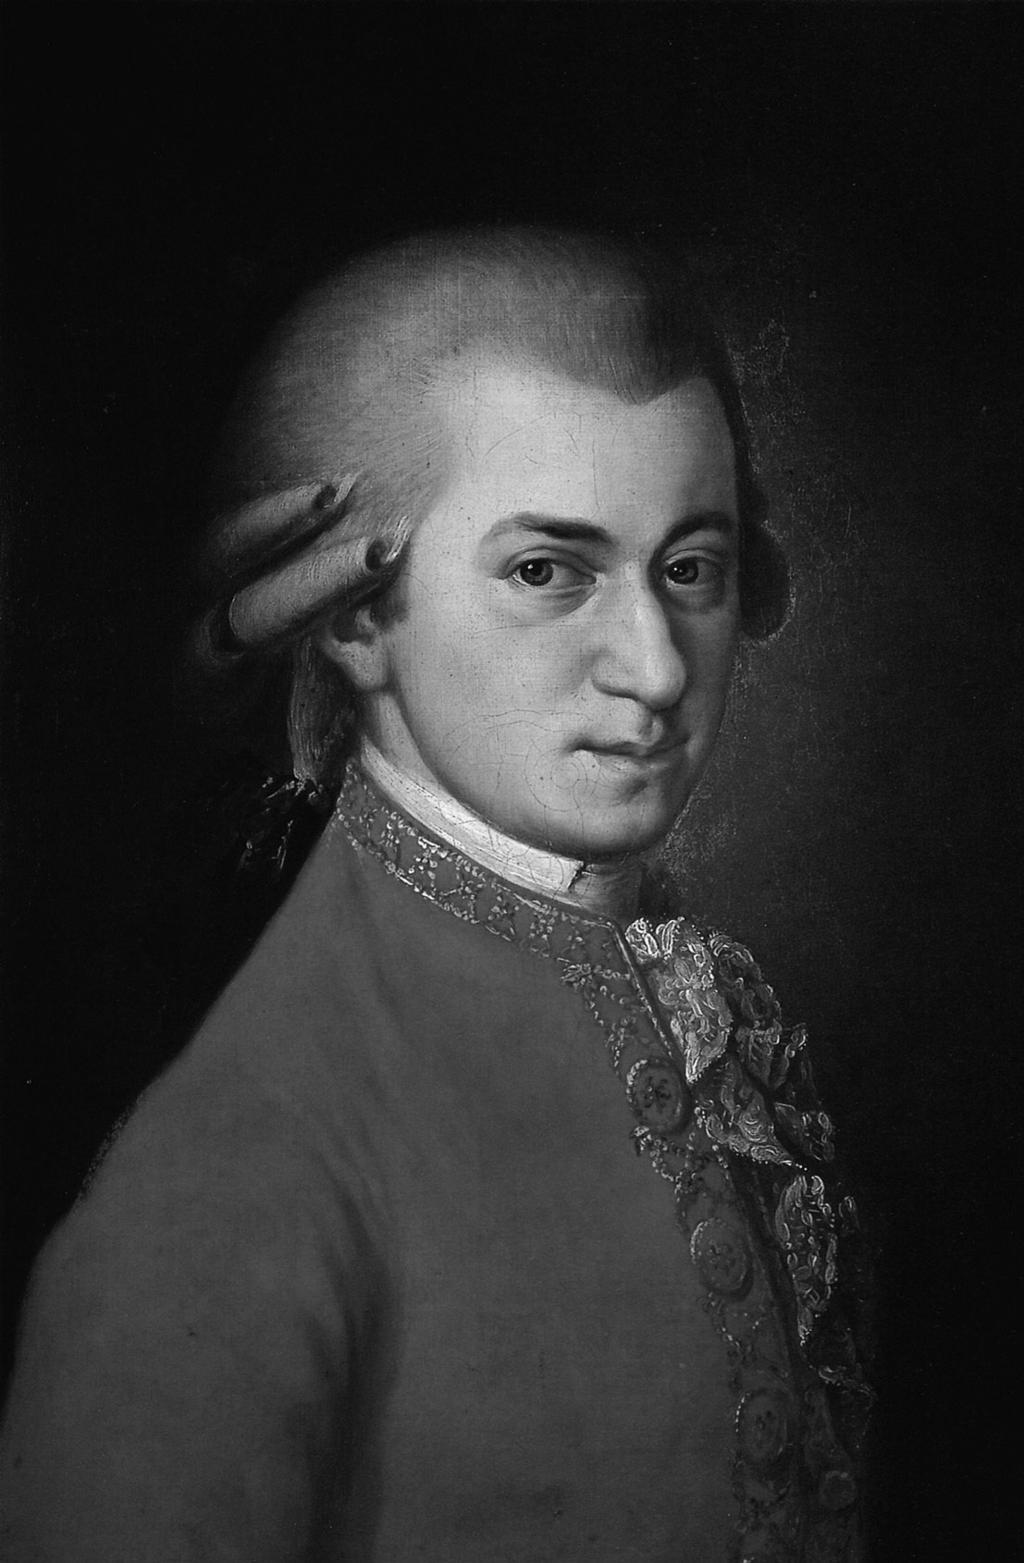 Wolfgang Amadeus Mozart SALZBURGO, 27 DE JANEIRO DE 1756 VIENA, 5 DE DEZEMBRO DE 1791 Concerto para fagote e orquestra em Si bemol maior, KV 191 Em Março de 1773, o jovem Wolfgang Amadeus Mozart